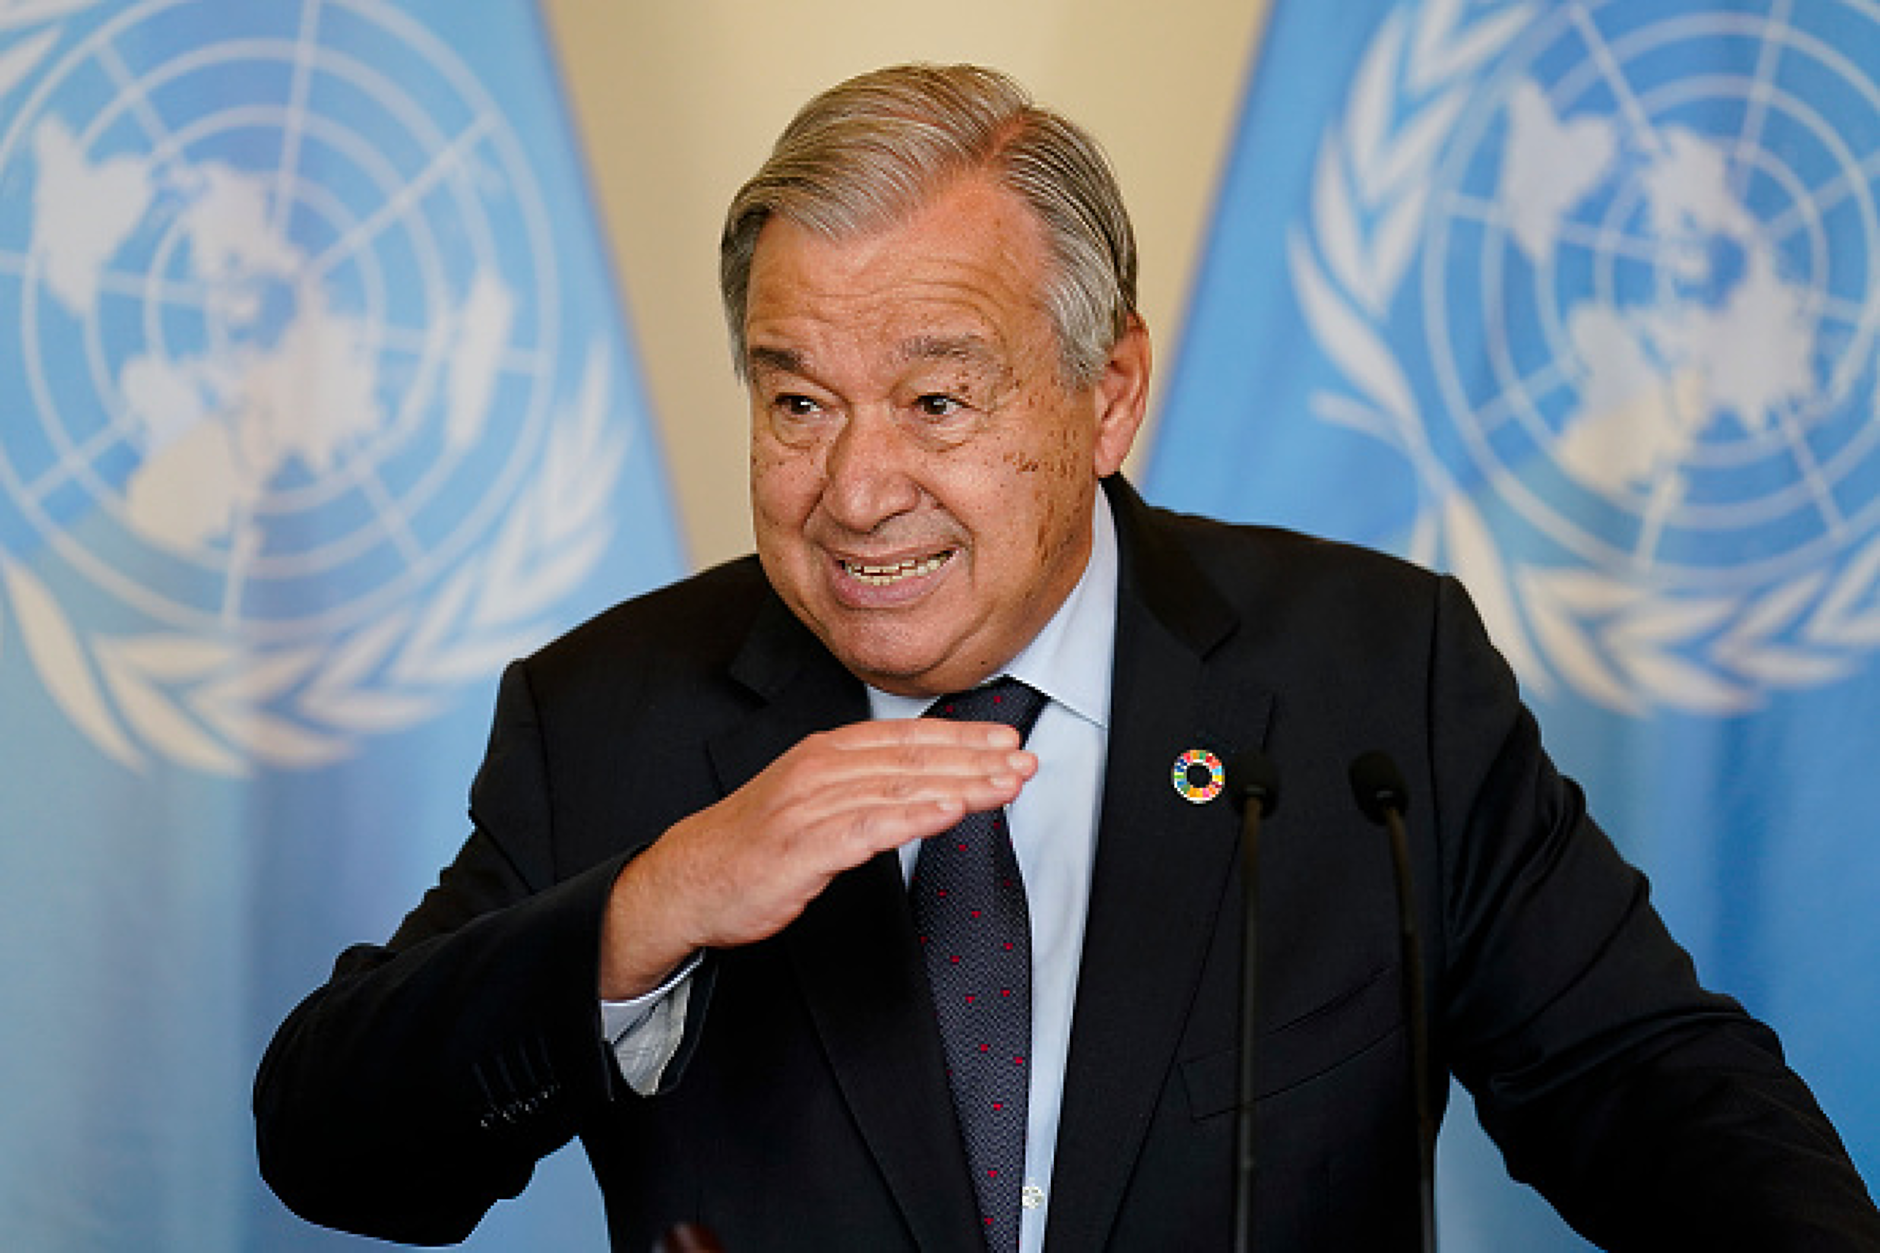 Генералният секретар на ООН разтревожен, че светът върви към „по-мащабна война“ 